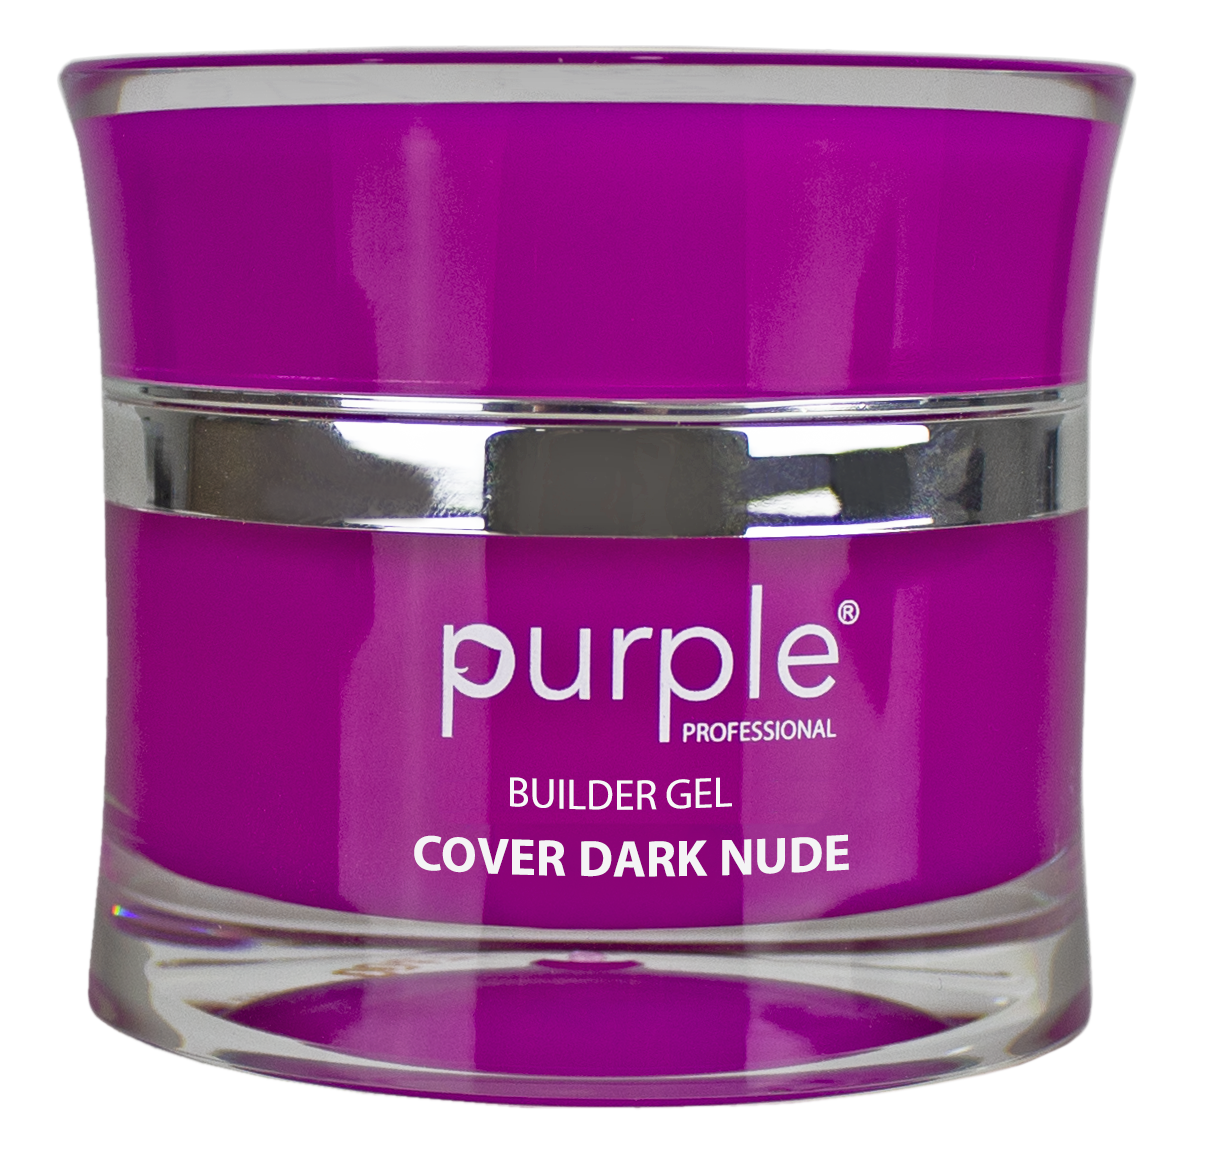 Cover Dark Nude 50ml